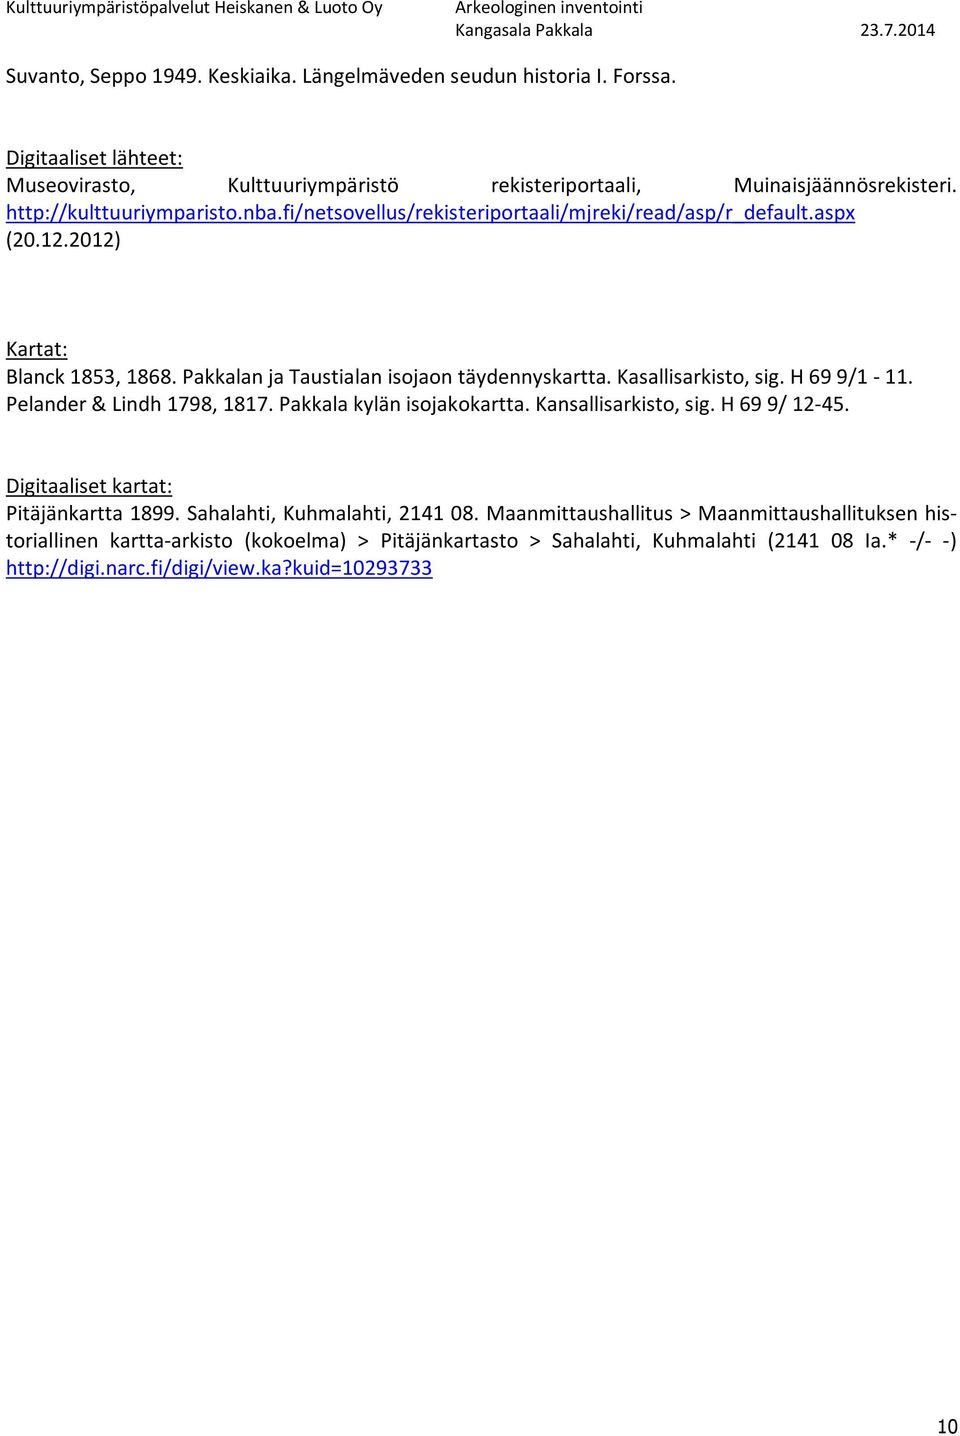 Kasallisarkisto, sig. H 69 9/1-11. Pelander & Lindh 1798, 1817. kylän isojakokartta. Kansallisarkisto, sig. H 69 9/ 12-45. Digitaaliset kartat: Pitäjänkartta 1899.